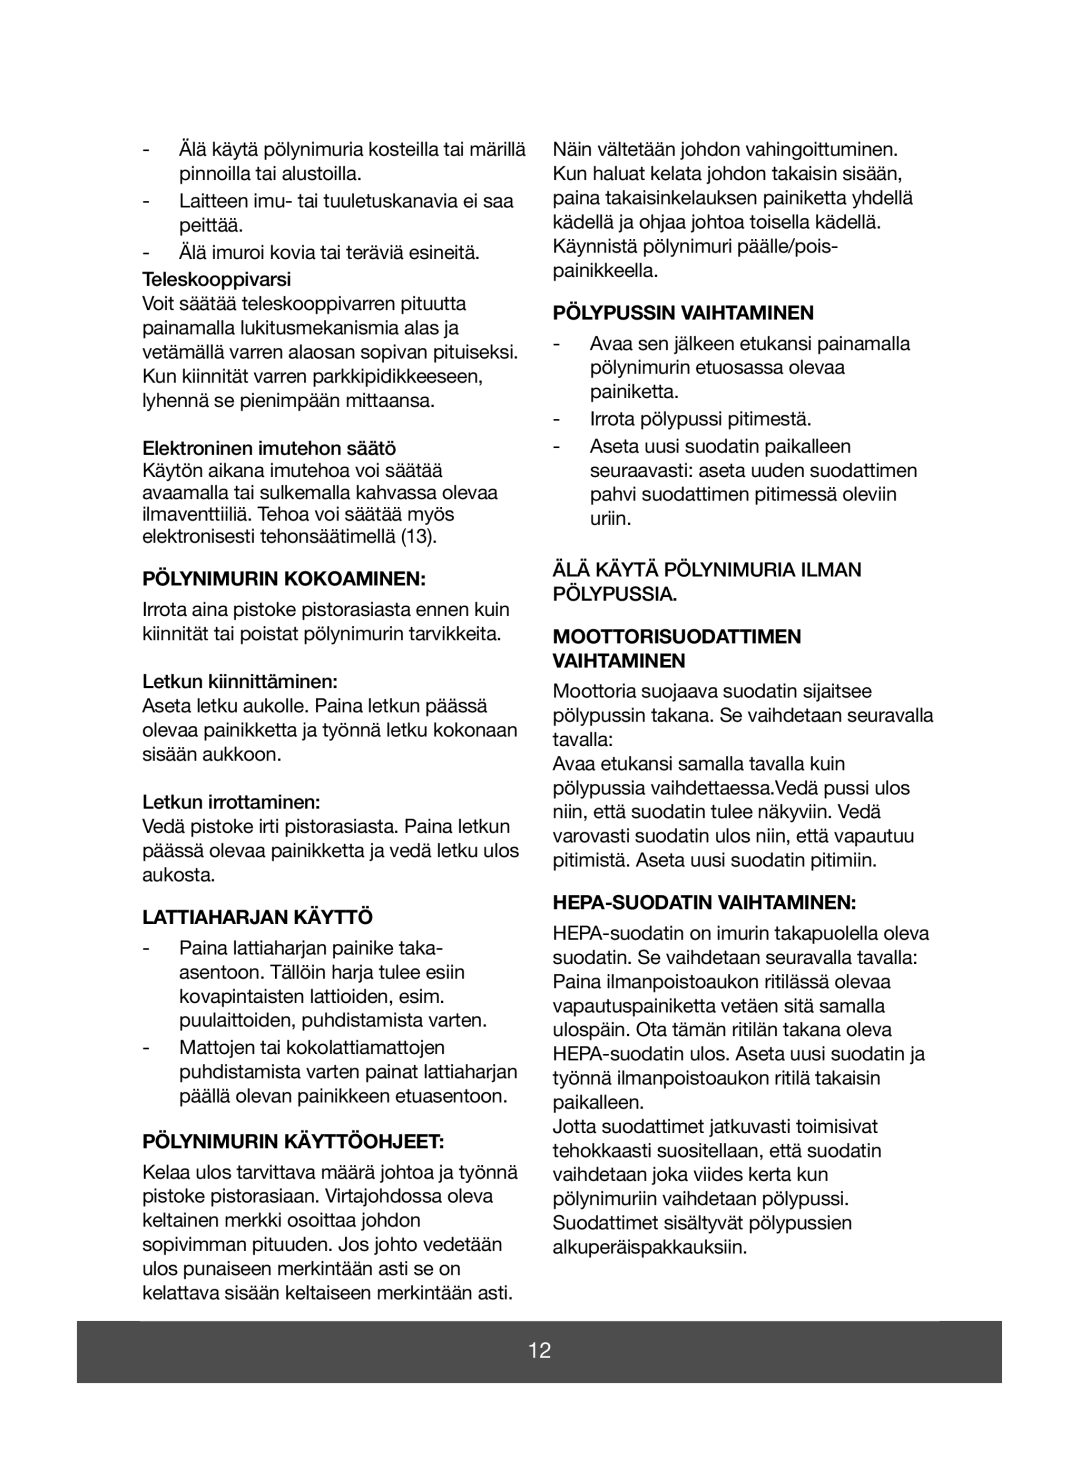 Melissa 640-071 manual Pölynimurin Kokoaminen, Lattiaharjan Käyttö, Pölynimurin Käyttöohjeet, Pölypussin Vaihtaminen 